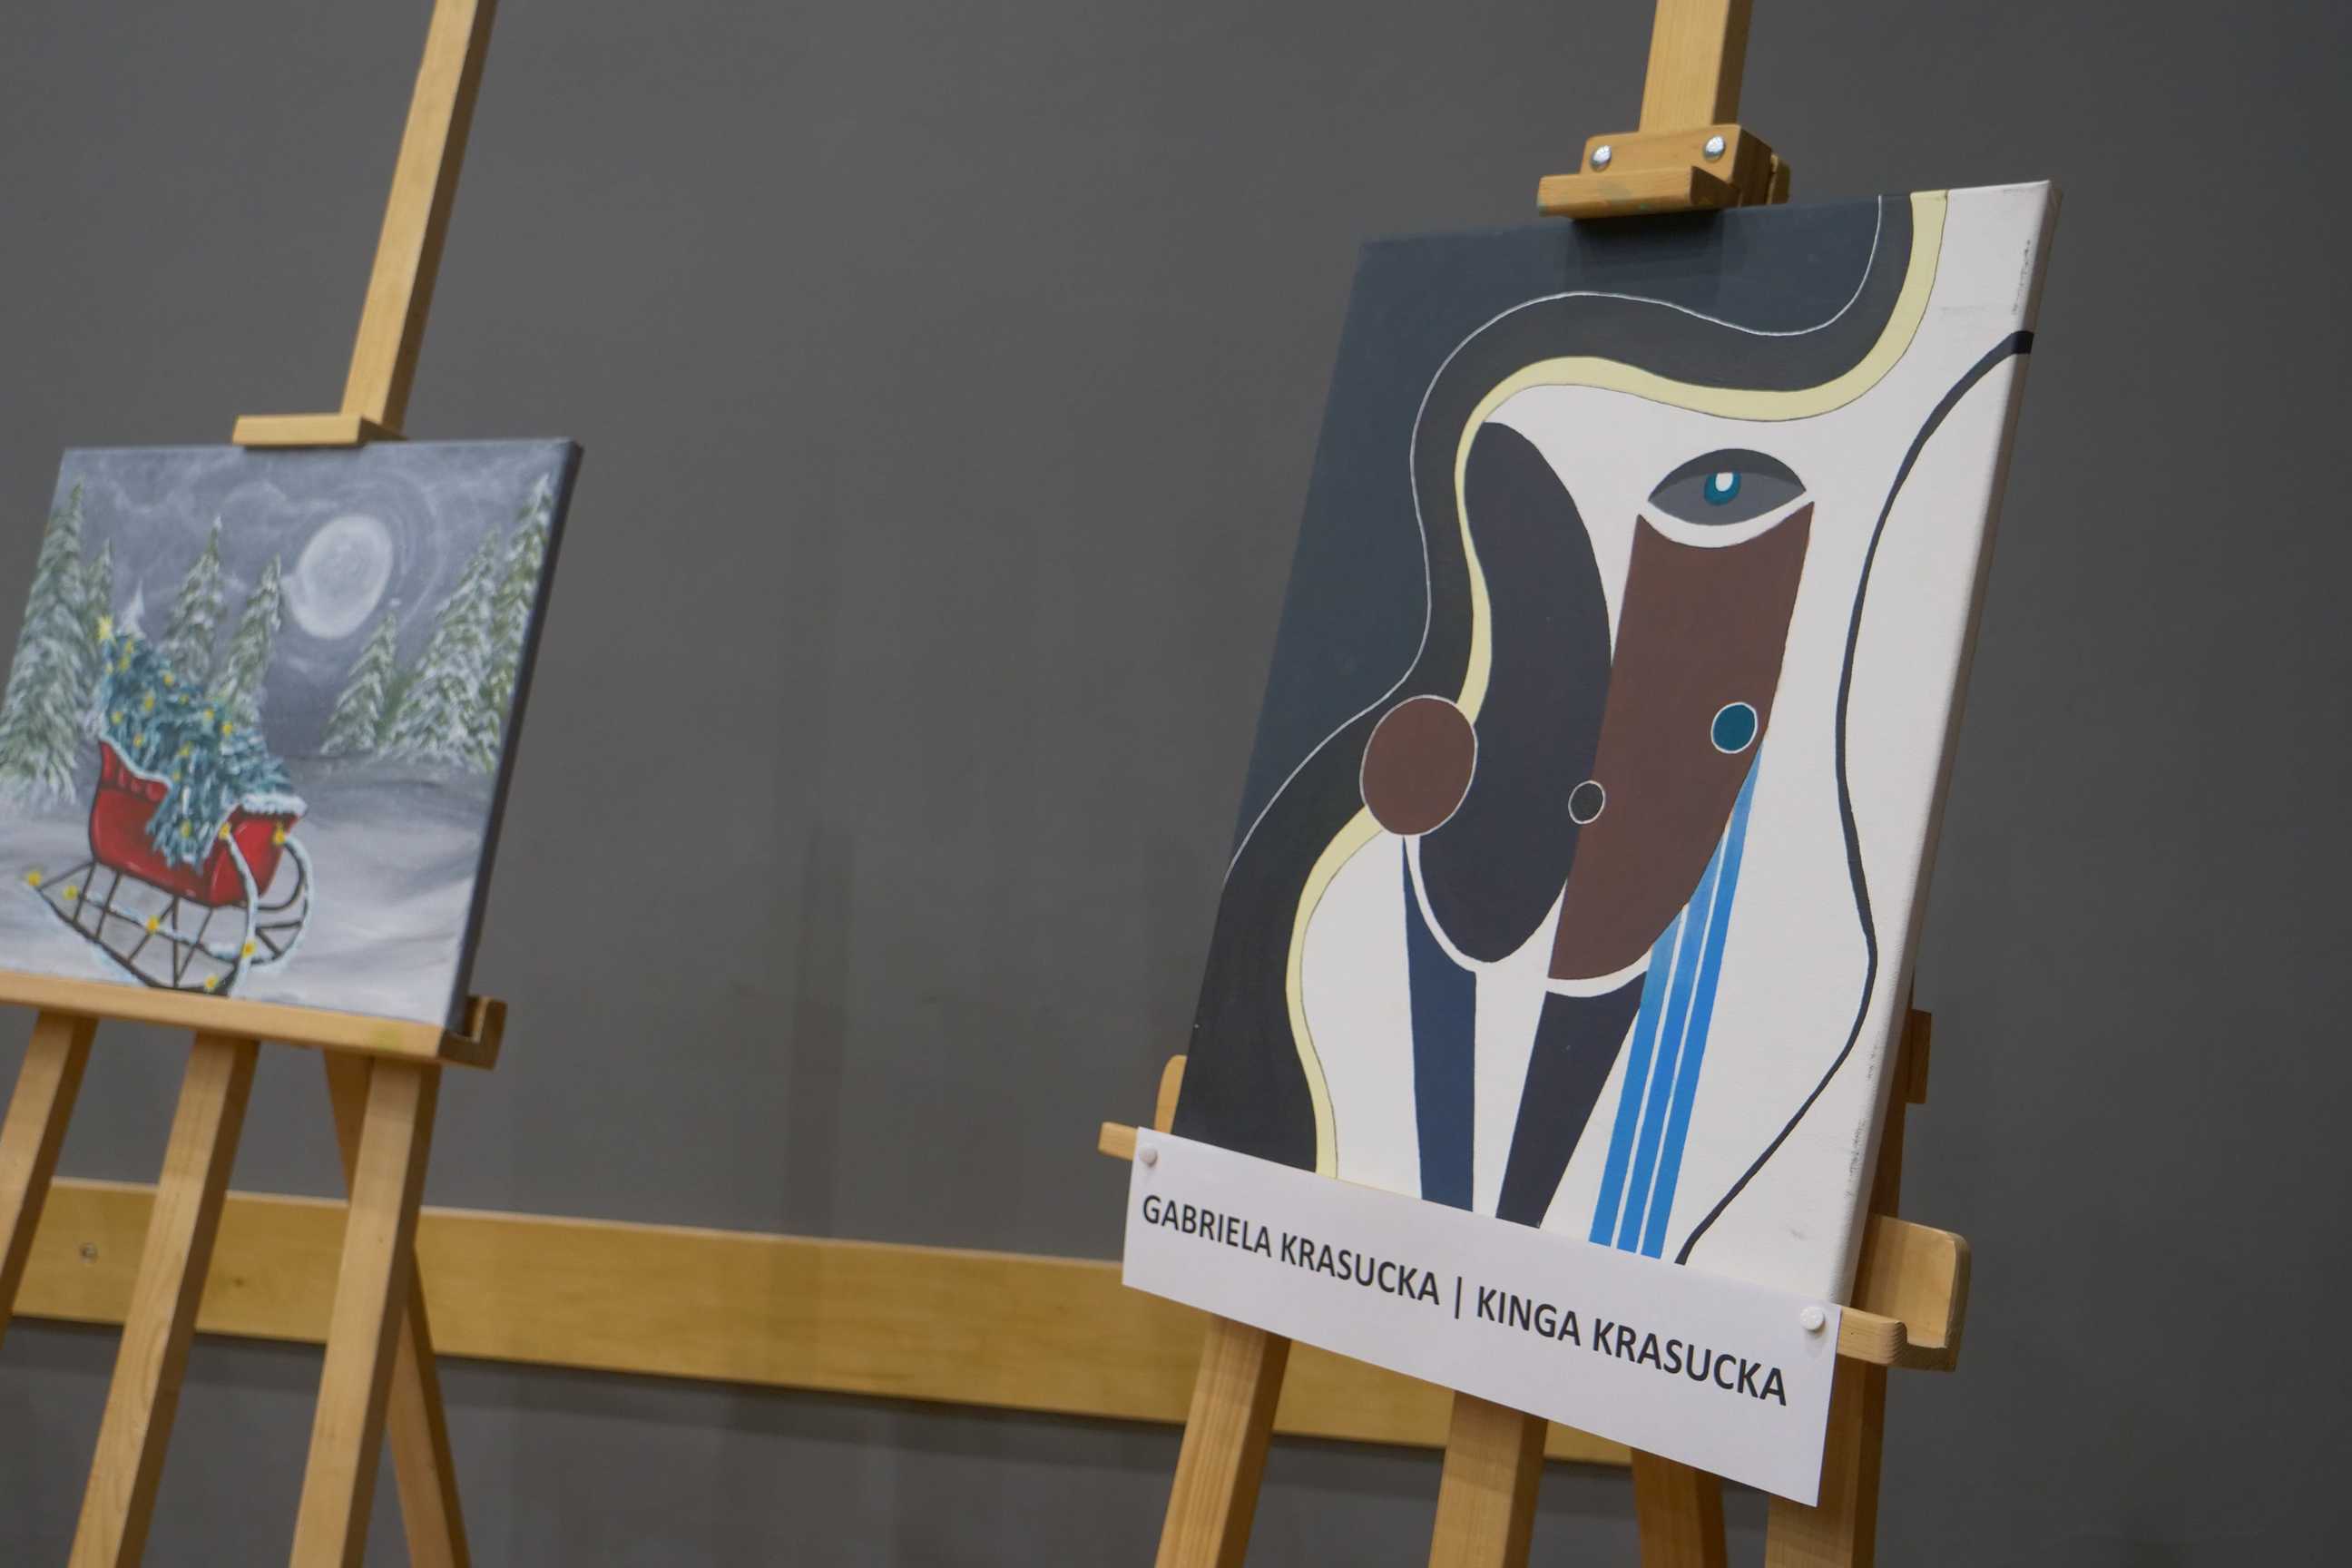 obraz wernisażu malarskiego "Podróże wyobraźni" uczniów ZSOiT w Wojkowicach w Miejskim Ośrodku Kultury w Wojkowicach